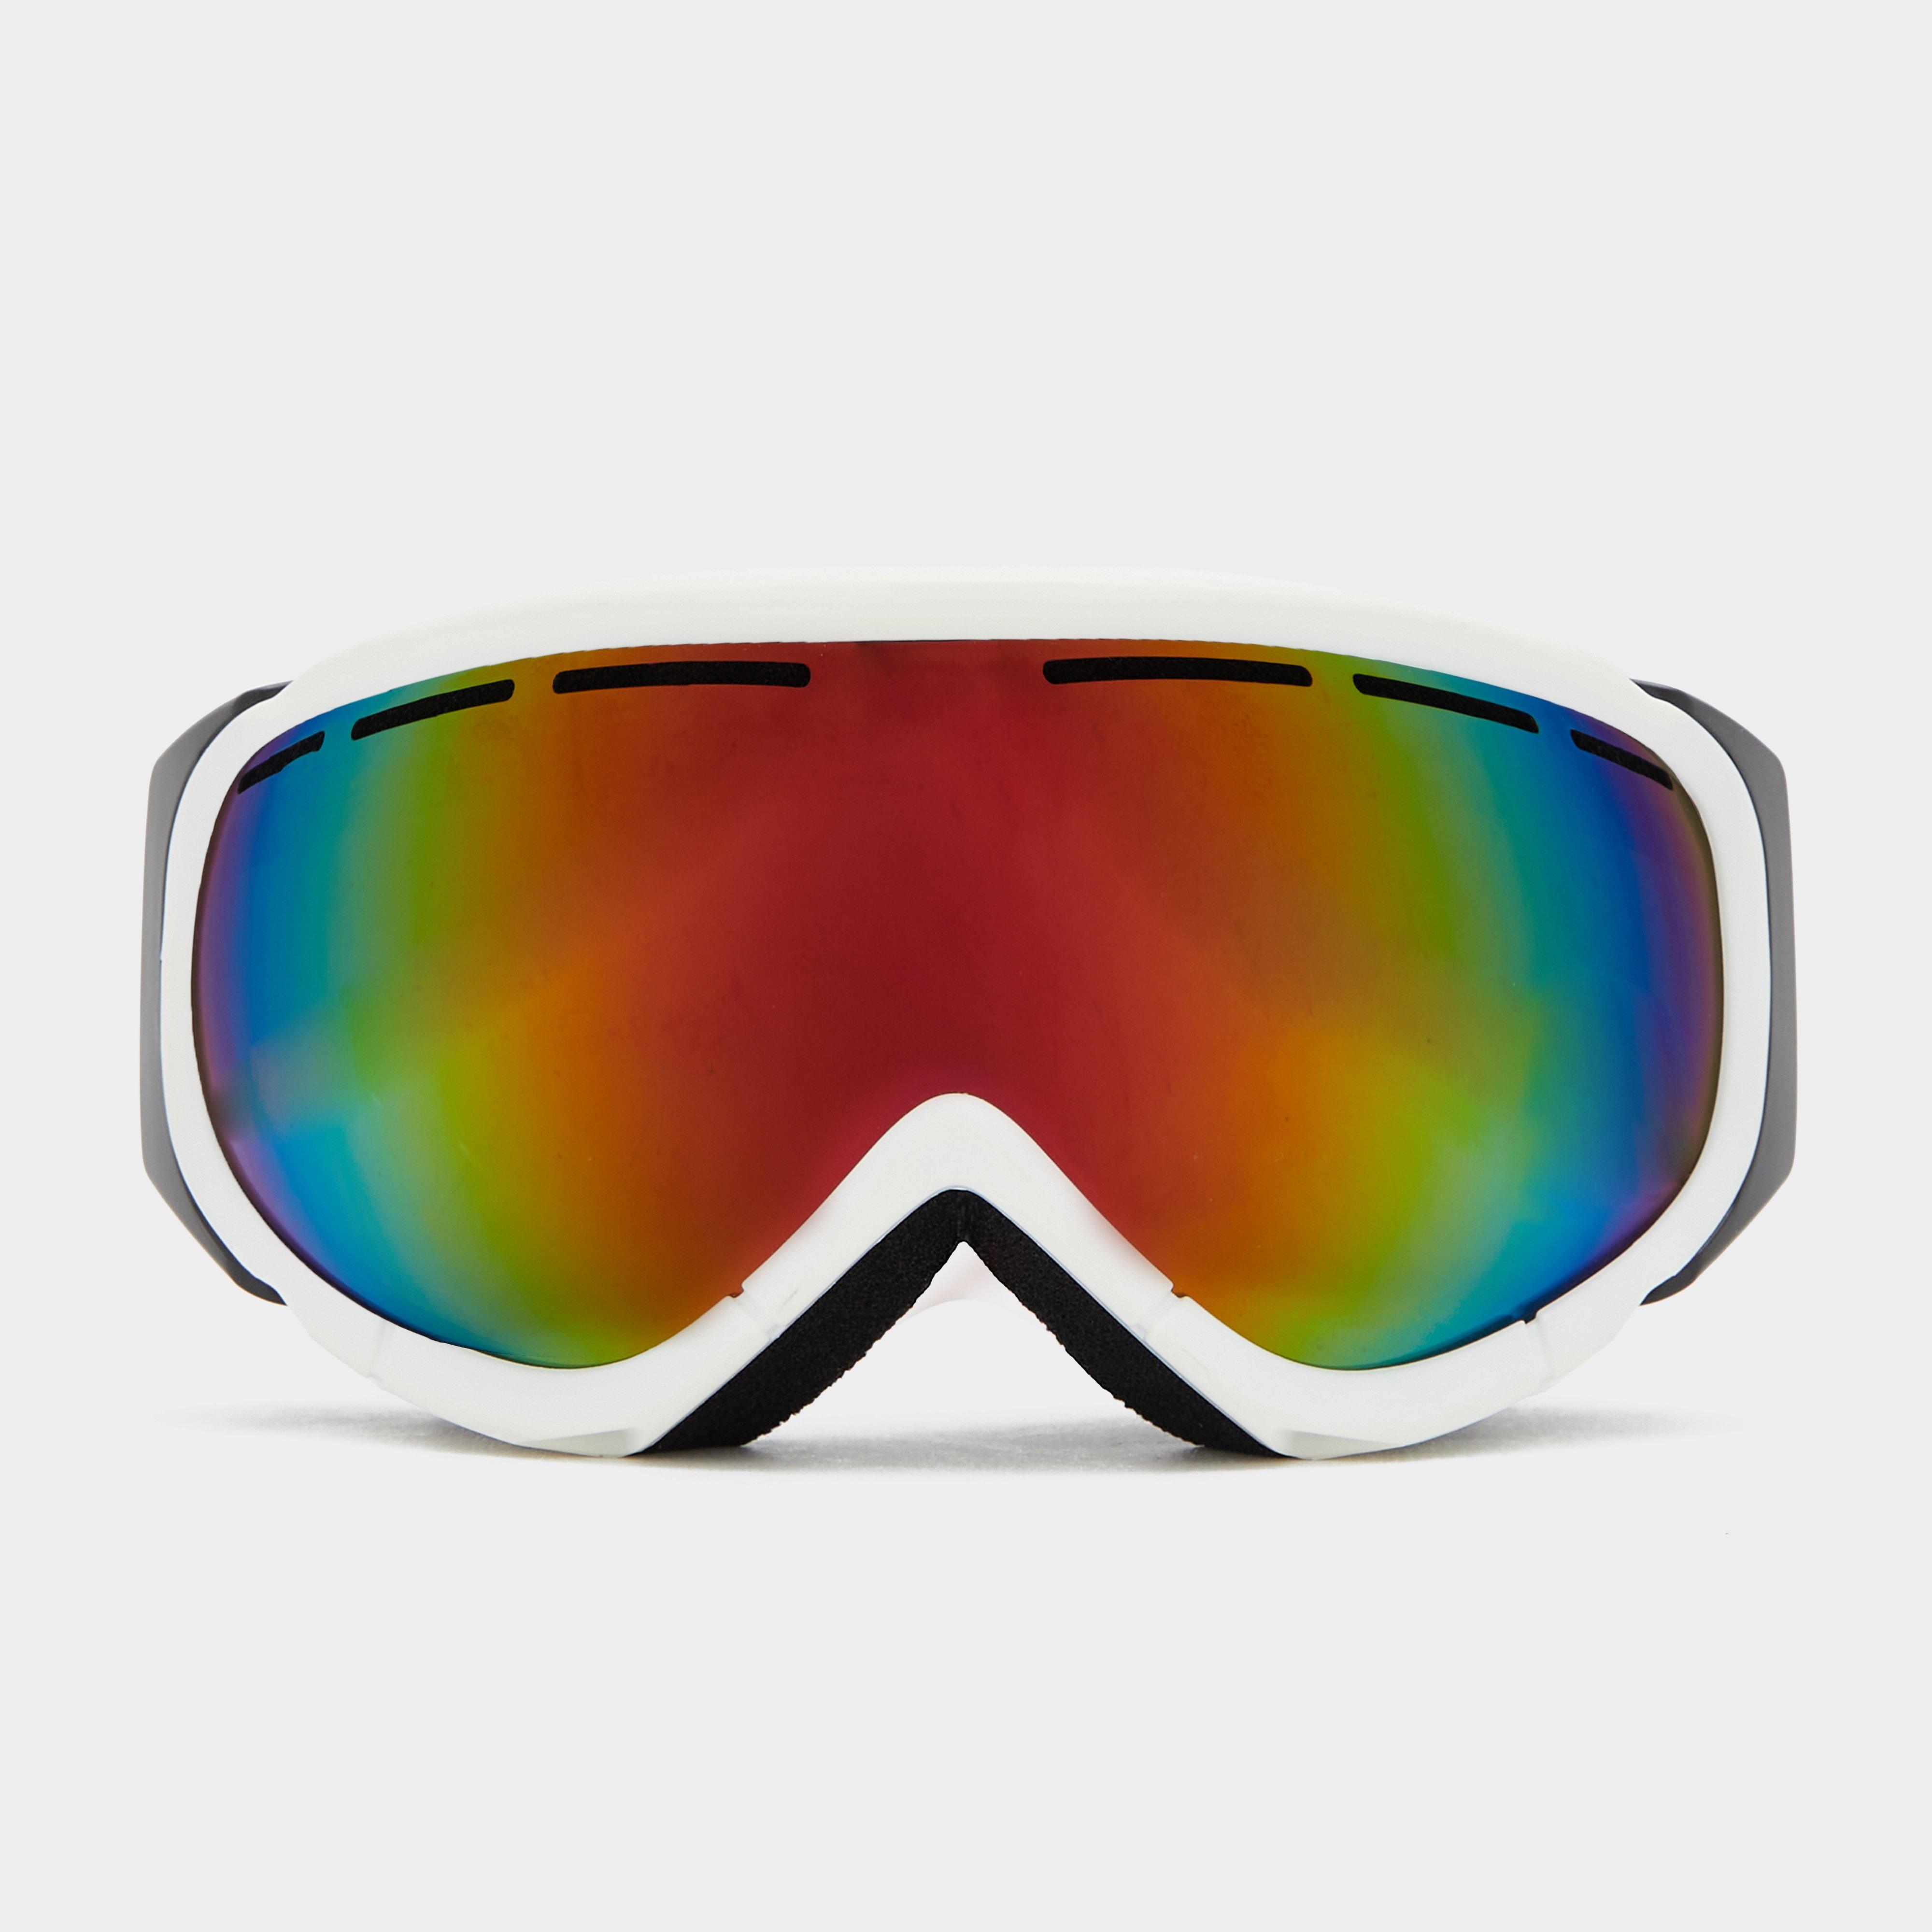 The Edge The Edge Unisex Piste Ski Goggles - Wht, WHT